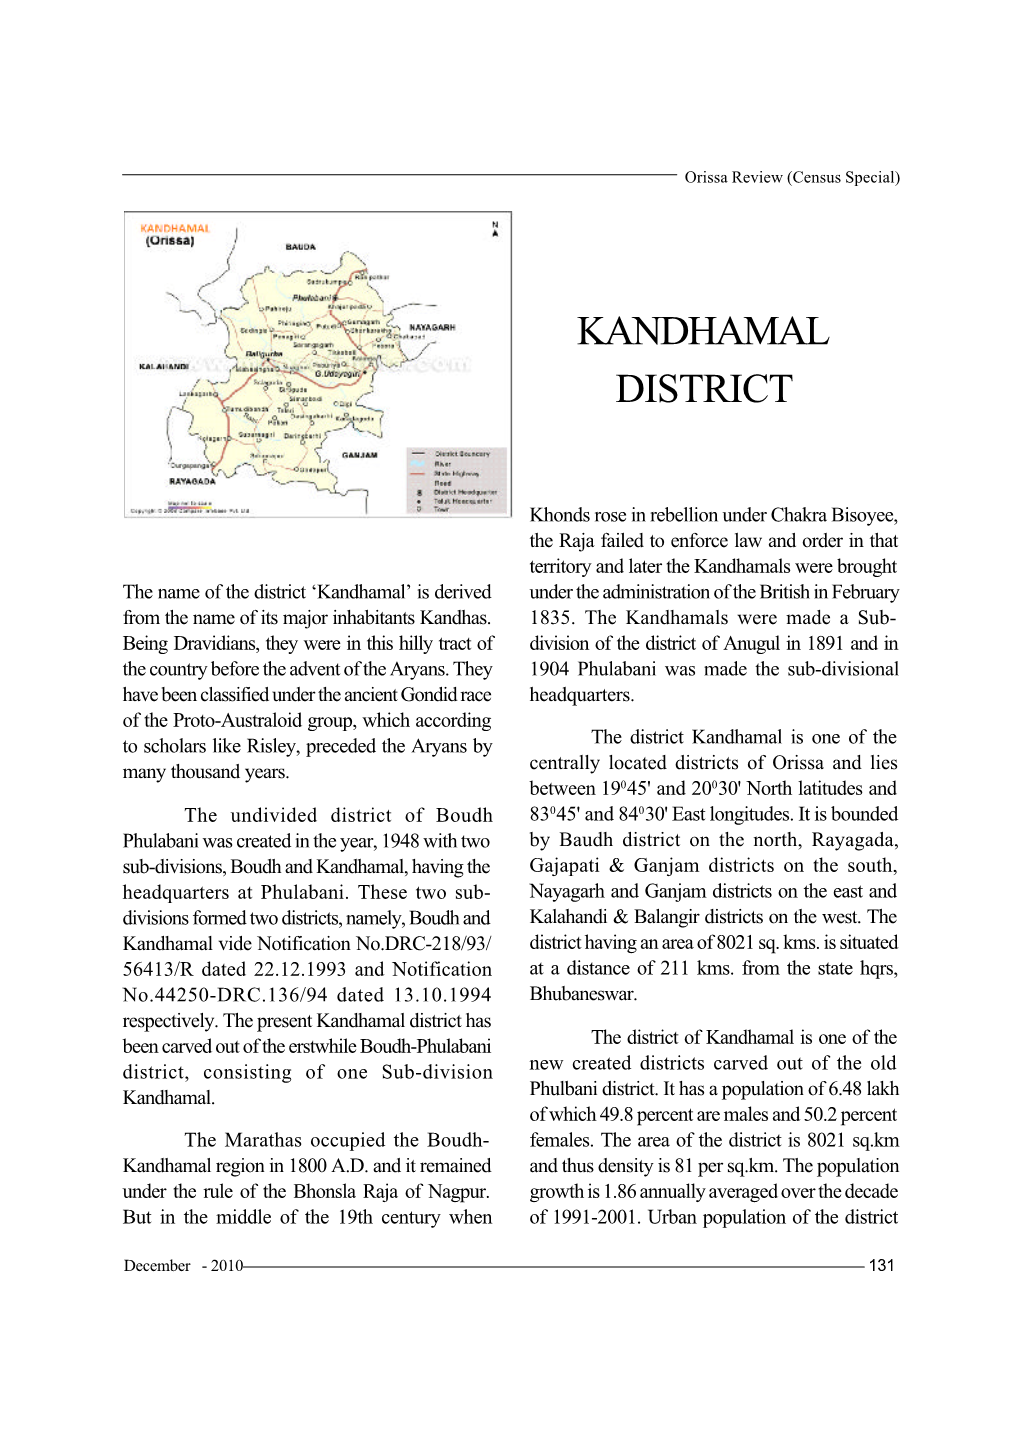 Kandhamal District